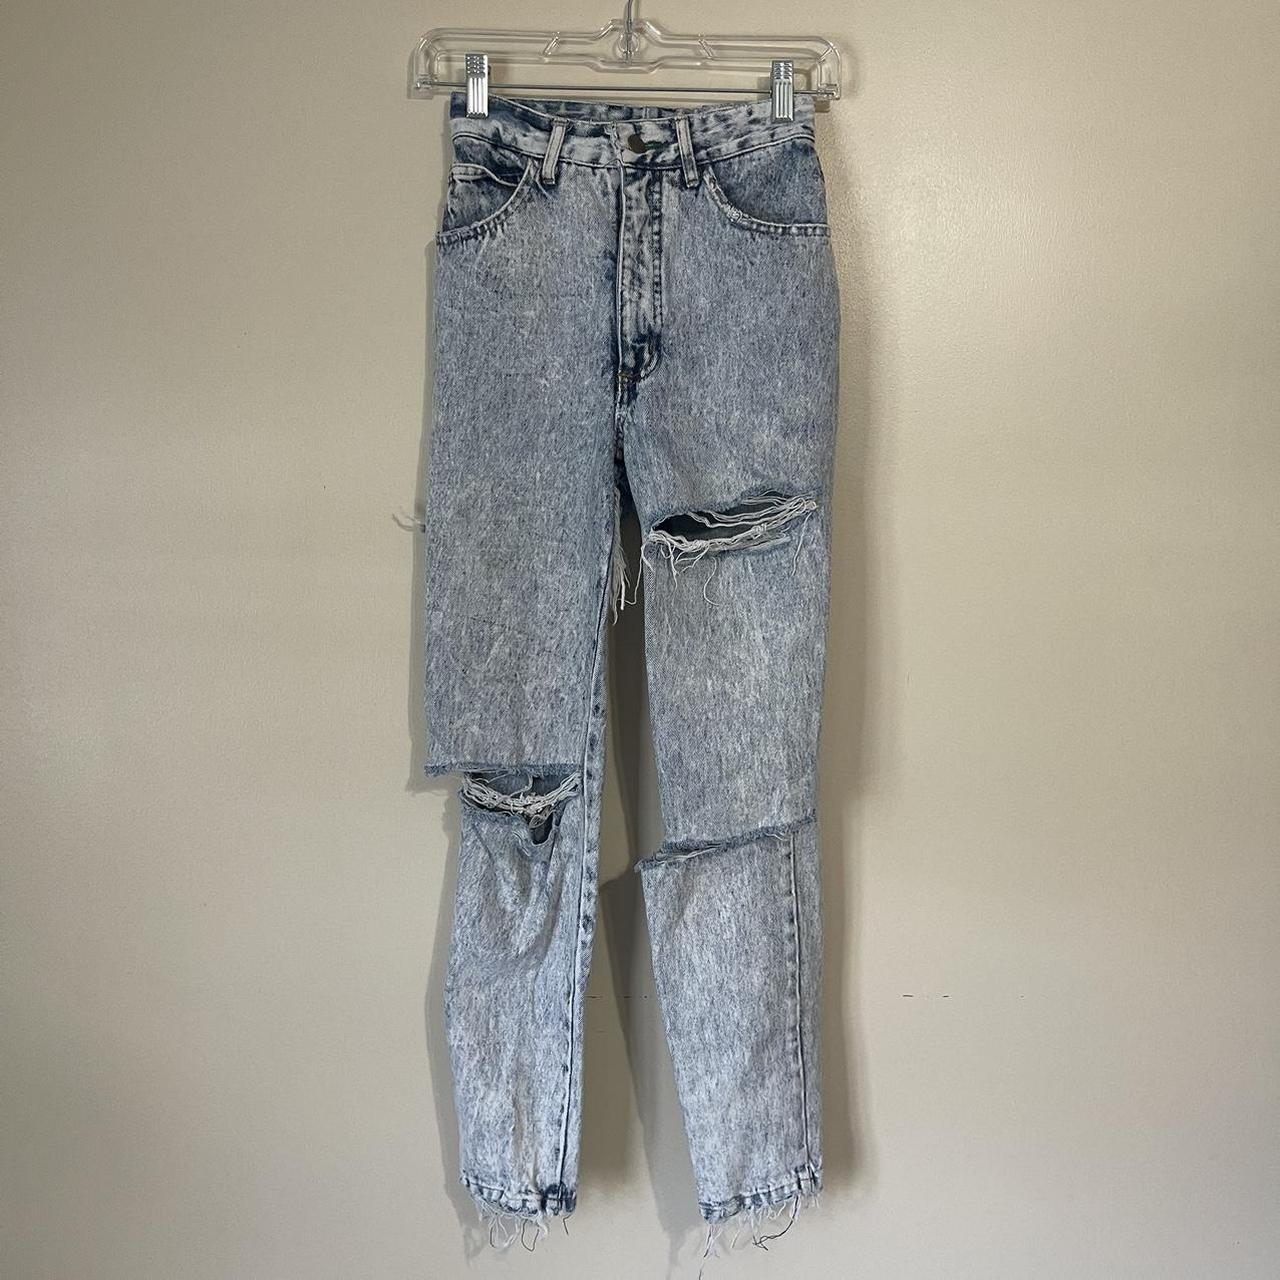 Amazing pair of 100% cotton jeans, light acid wash,... - Depop